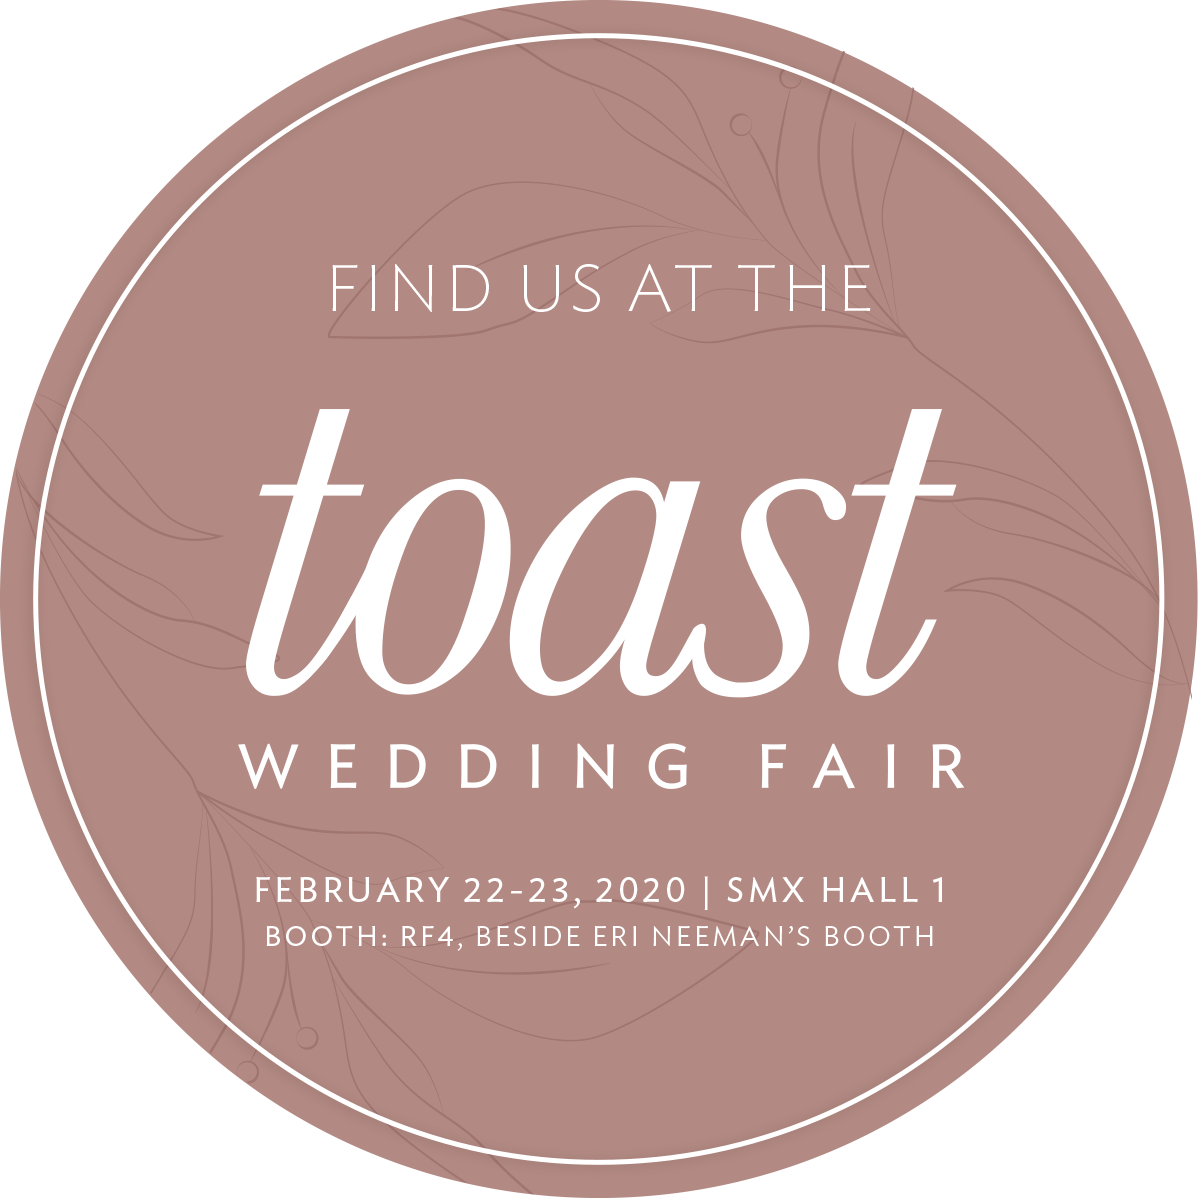 Find us at Toast Wedding Fair on Feb 22-23, 2020! SMX Hall 1, (R4F beside Eri Neeman’s booth)